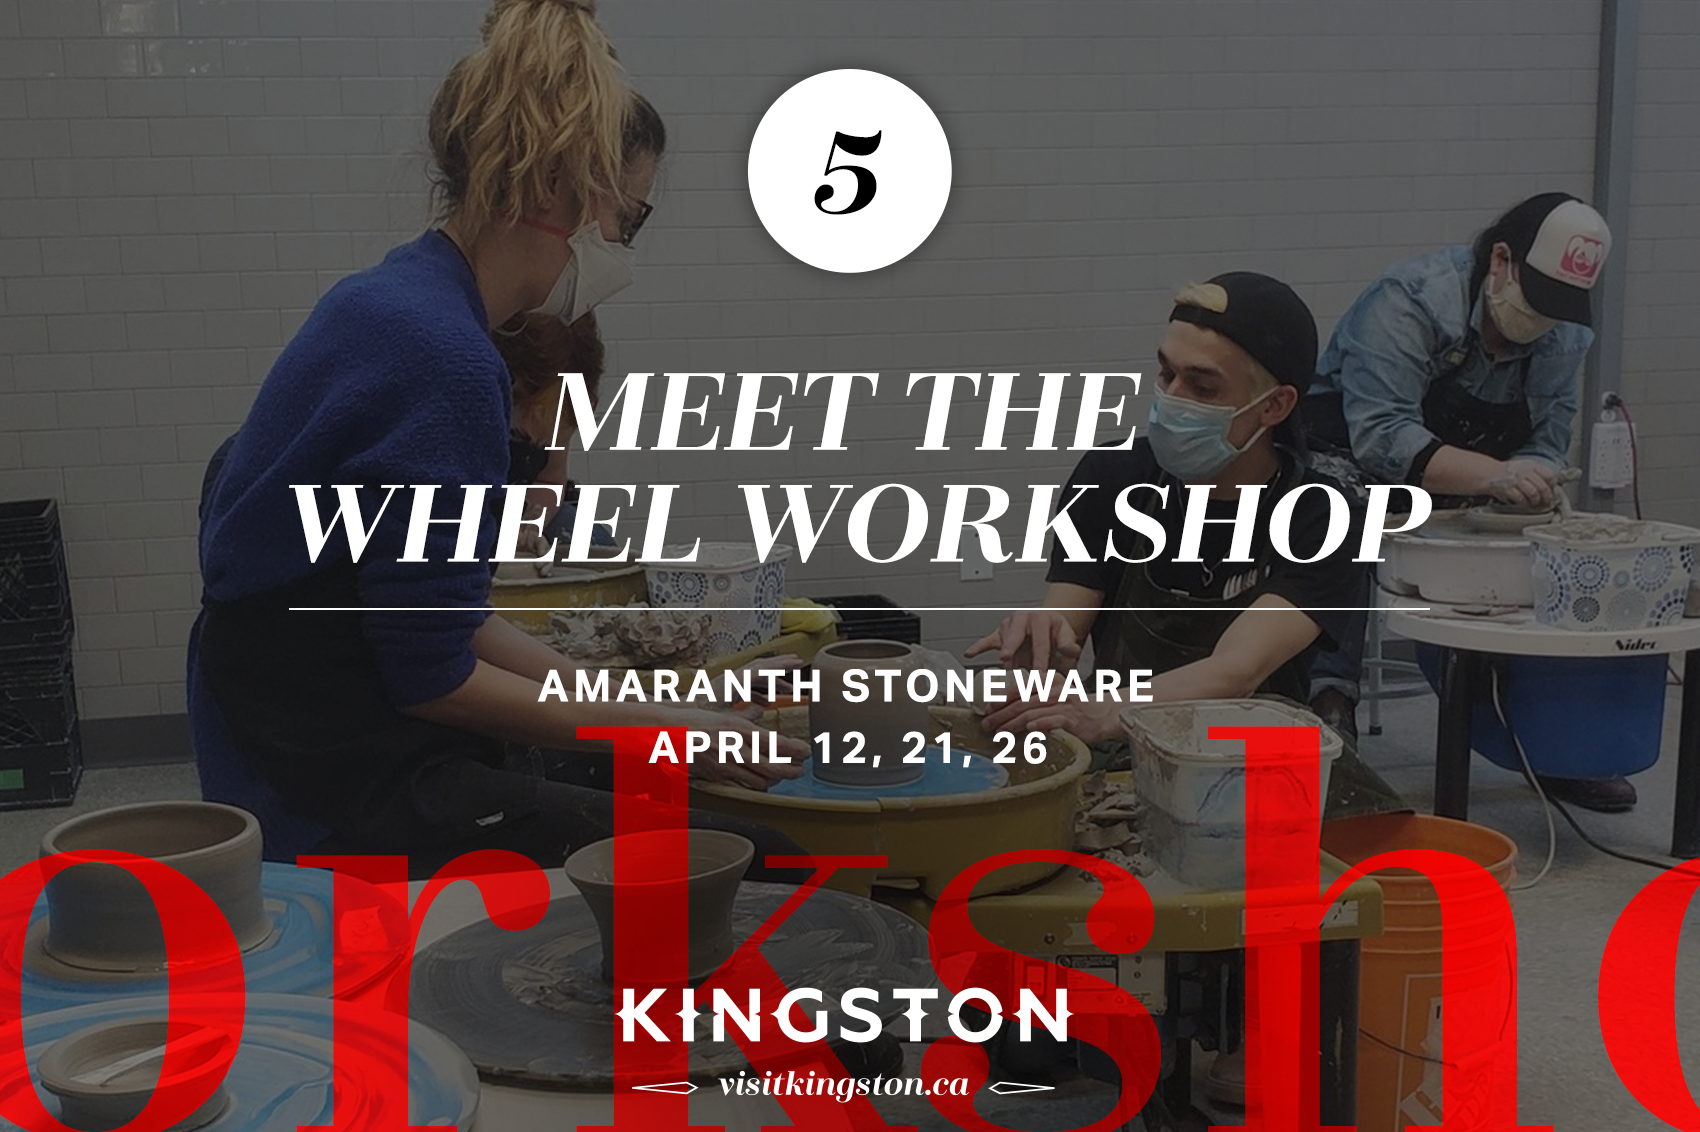 Meet the wheel workshop